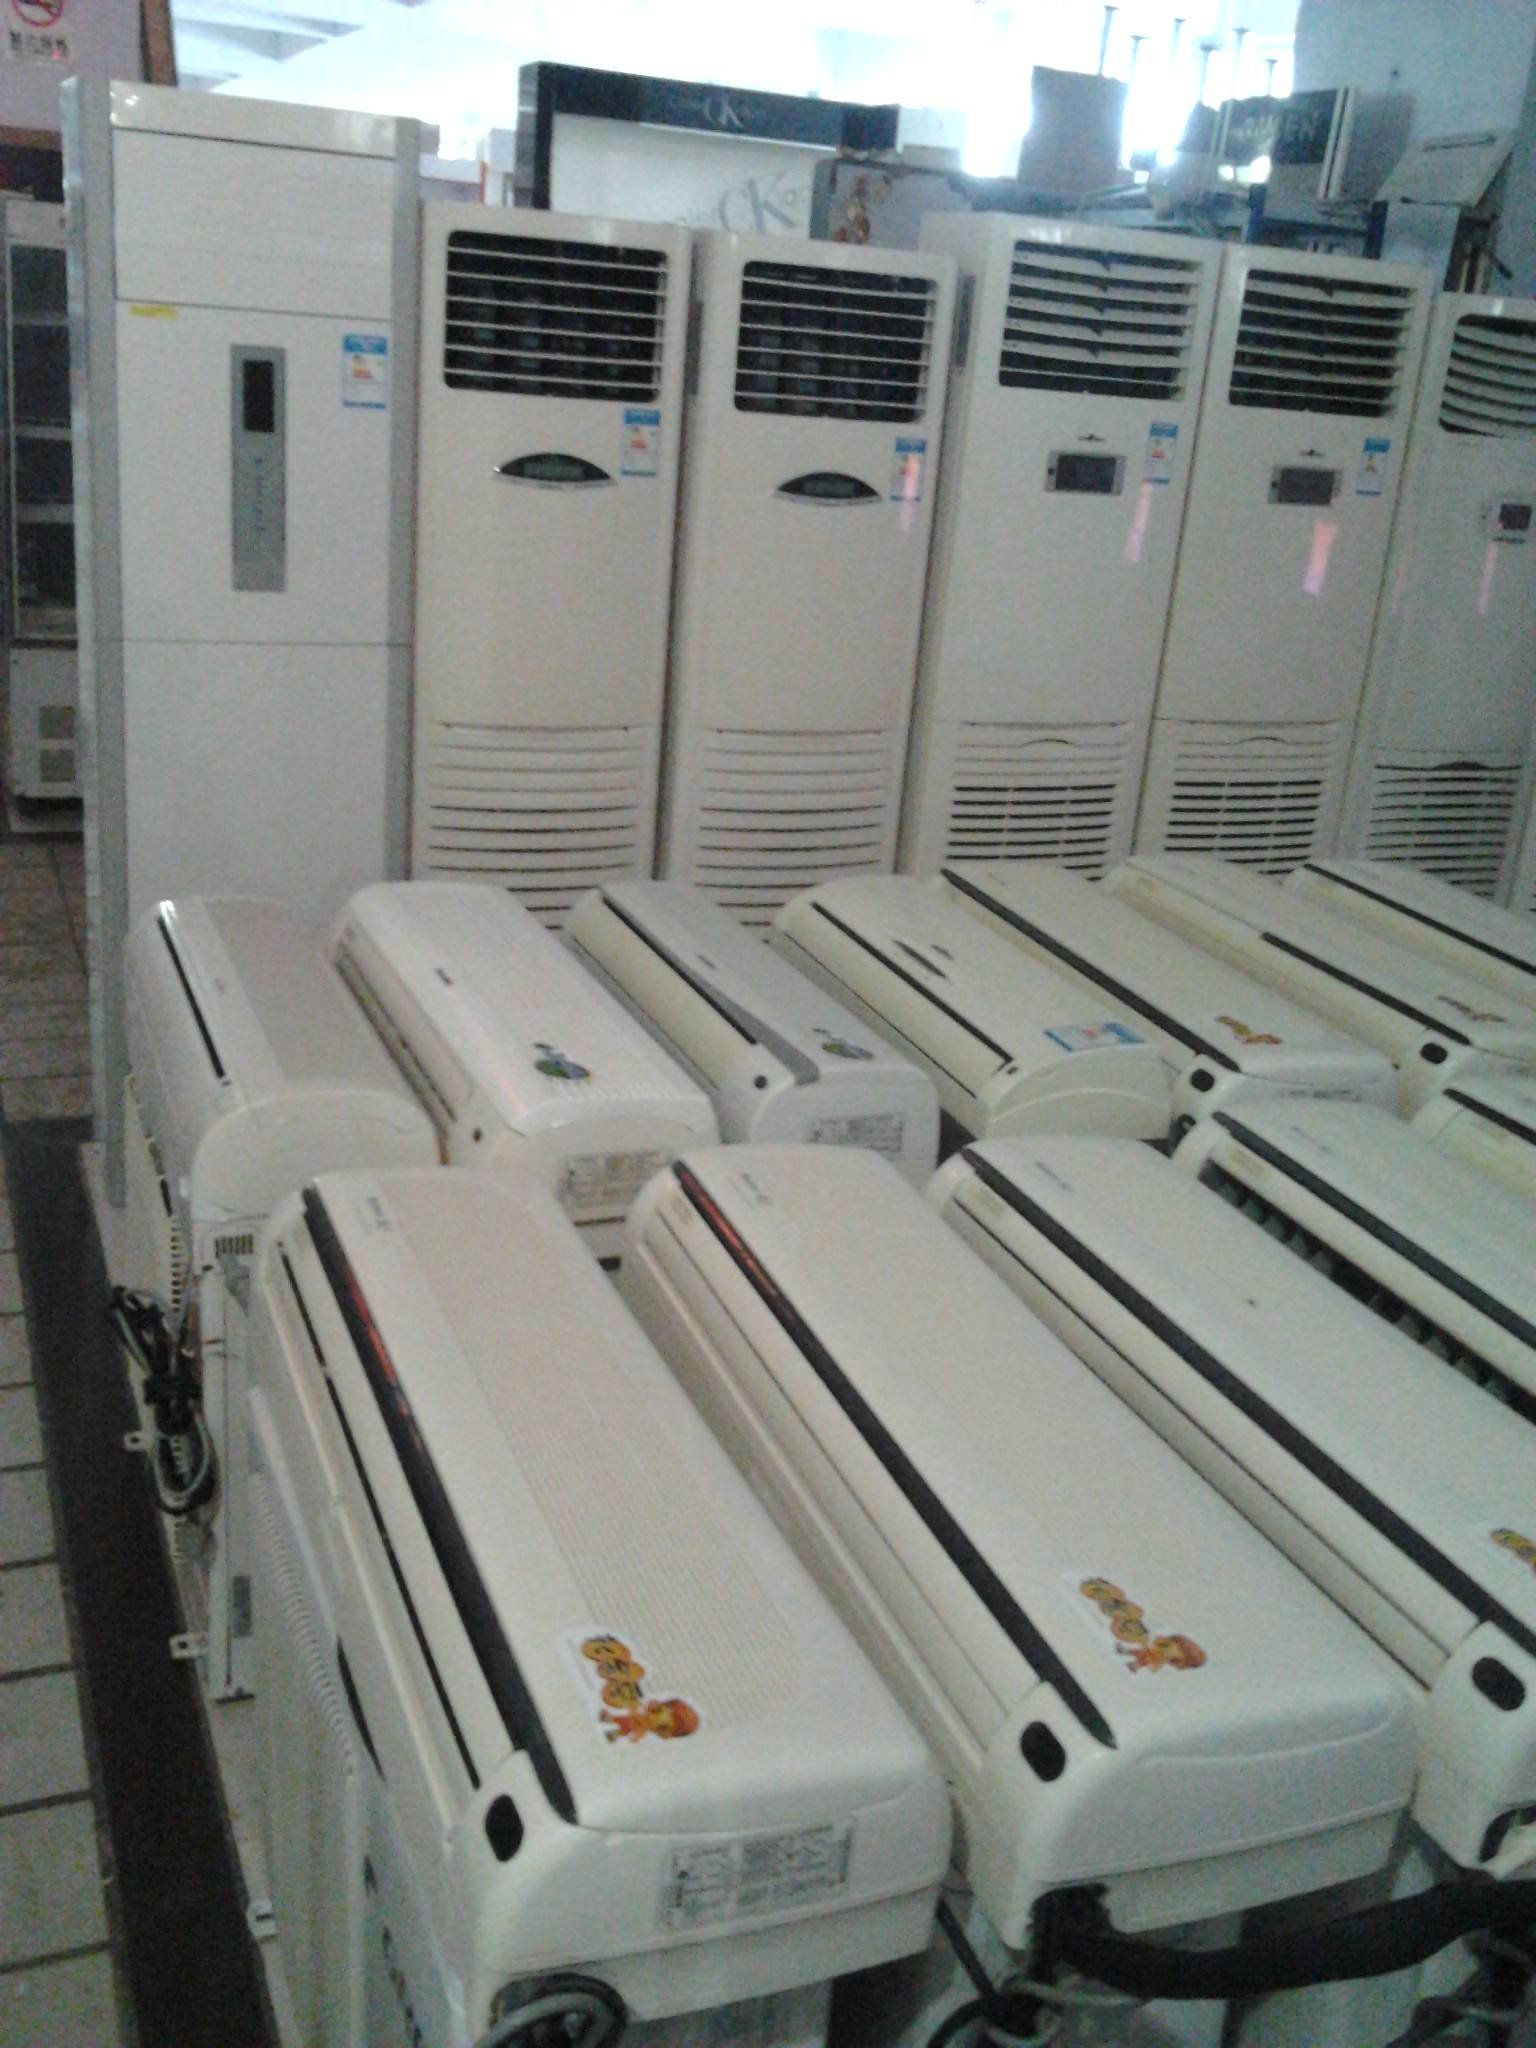 广州办公用品高价回收   广州办公用品回收  广州 空调电器回收  广州 空调电器高价回收